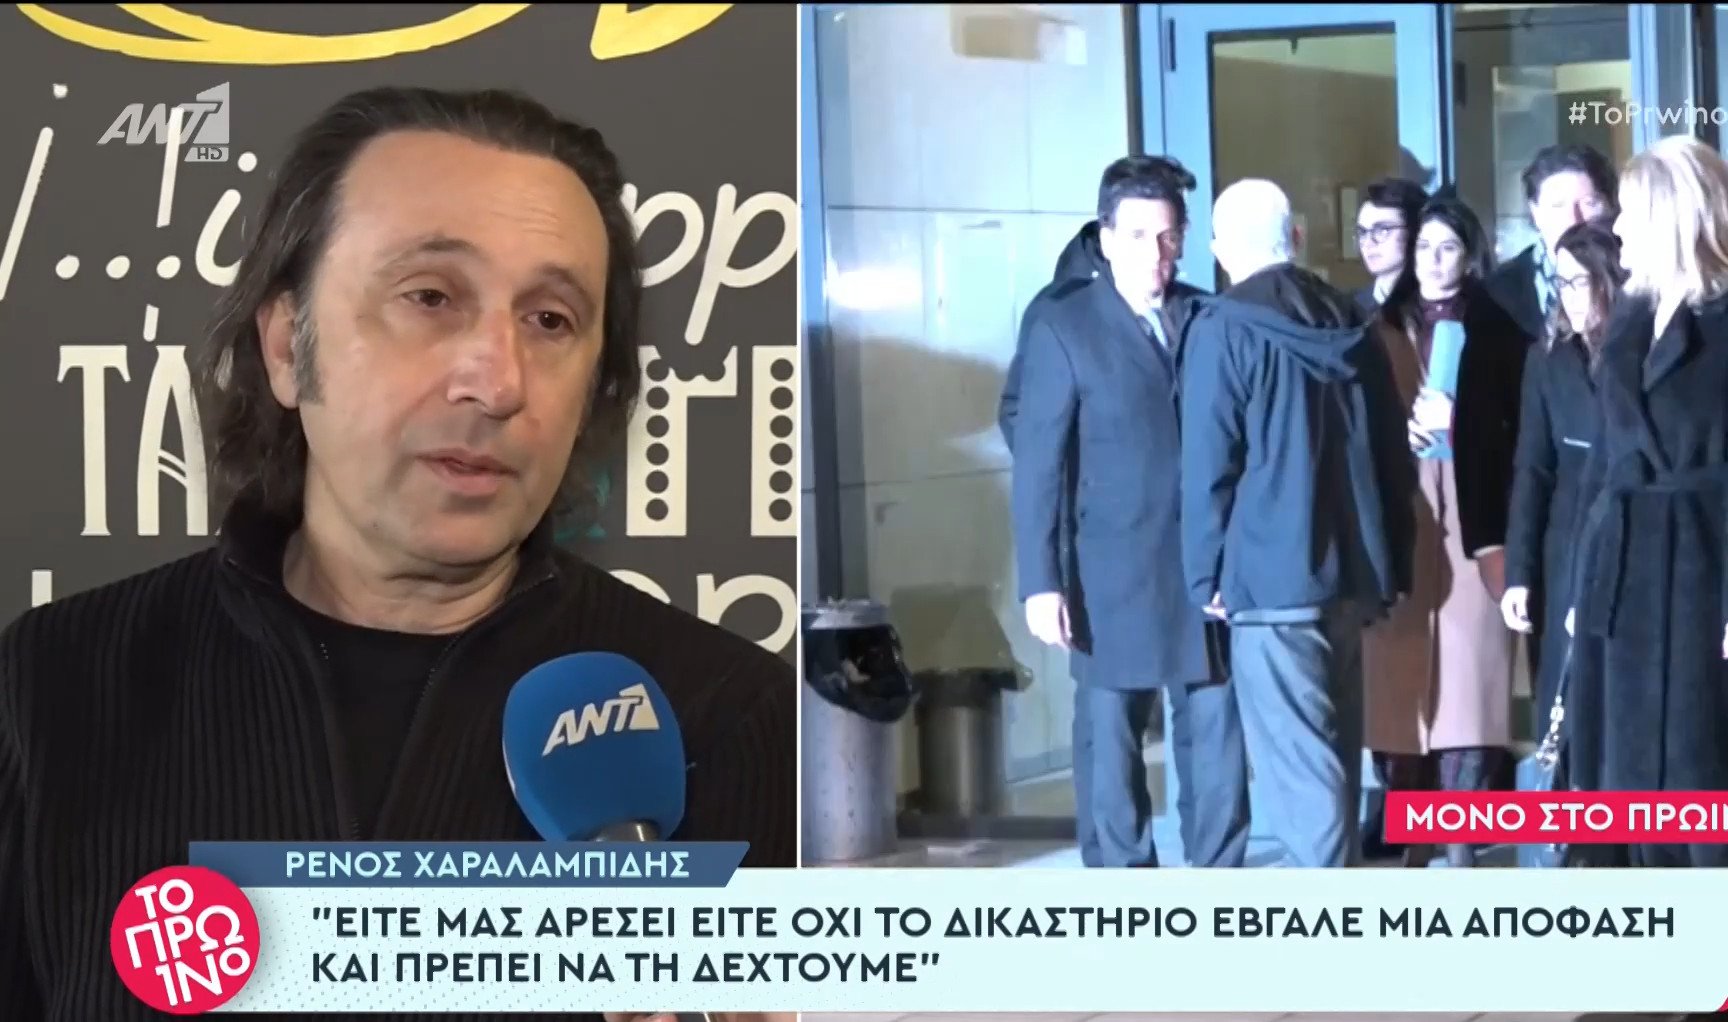 Ρένος Χαραλαμπίδης: «Το δικαστήριο έβγαλε απόφαση και οφείλουμε να την δεχτούμε, ο Φιλιππίδης είναι αθώος και ένοχος ταυτόχρονα»